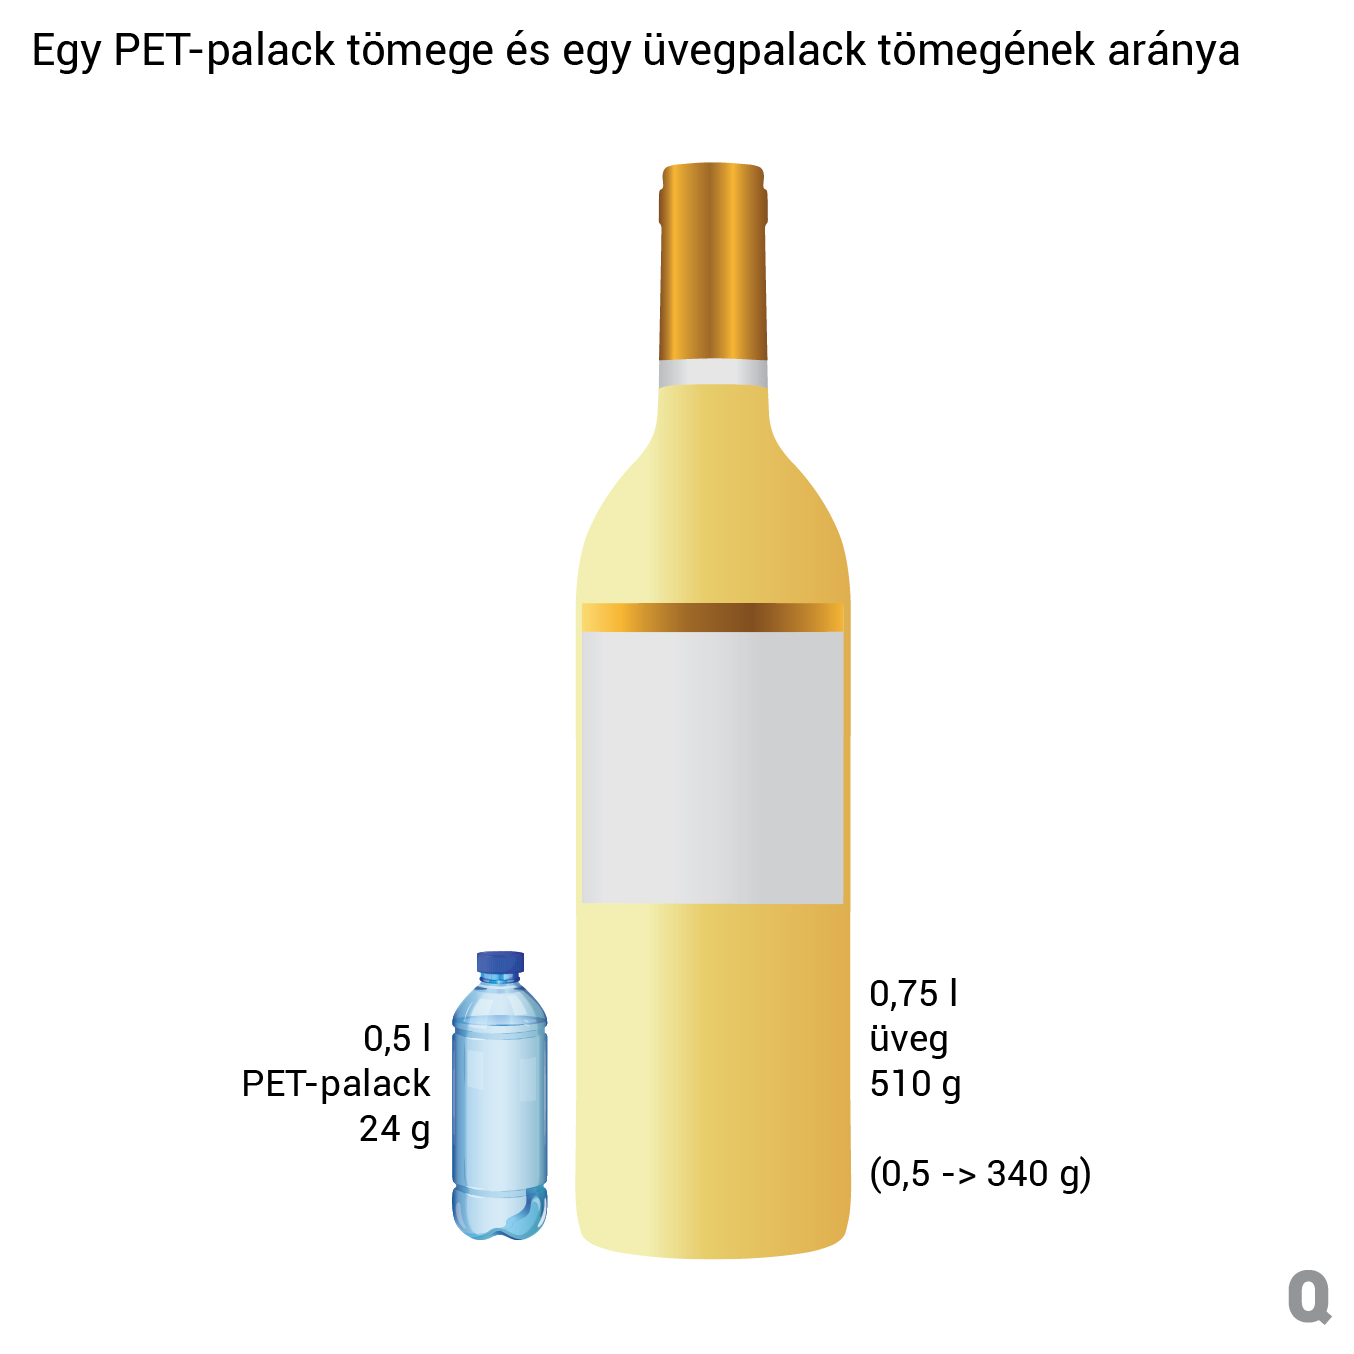 Egy PET-palack tömege és egy üvegpalack tömegének aránya